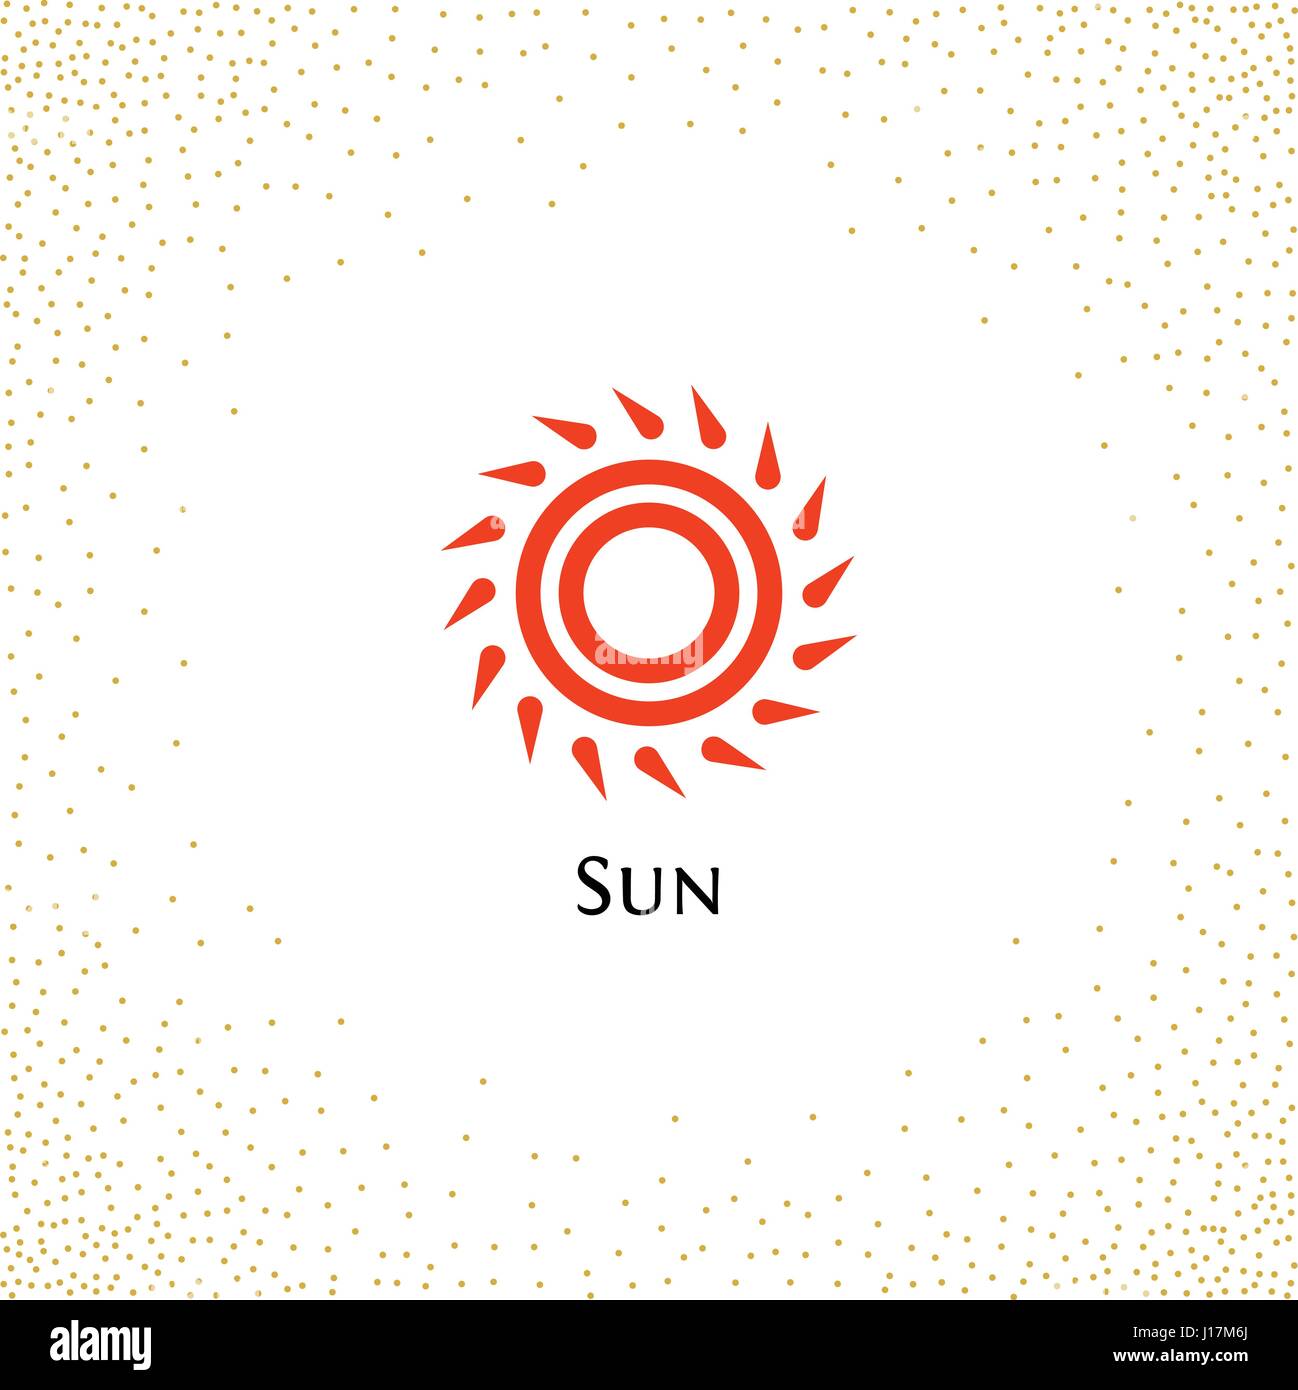 Isolierte abstrakt Runde Form Farbe orange Logo, Sonne Schriftzug Vektor-Illustration auf einem Hintergrund von Punkten Stock Vektor